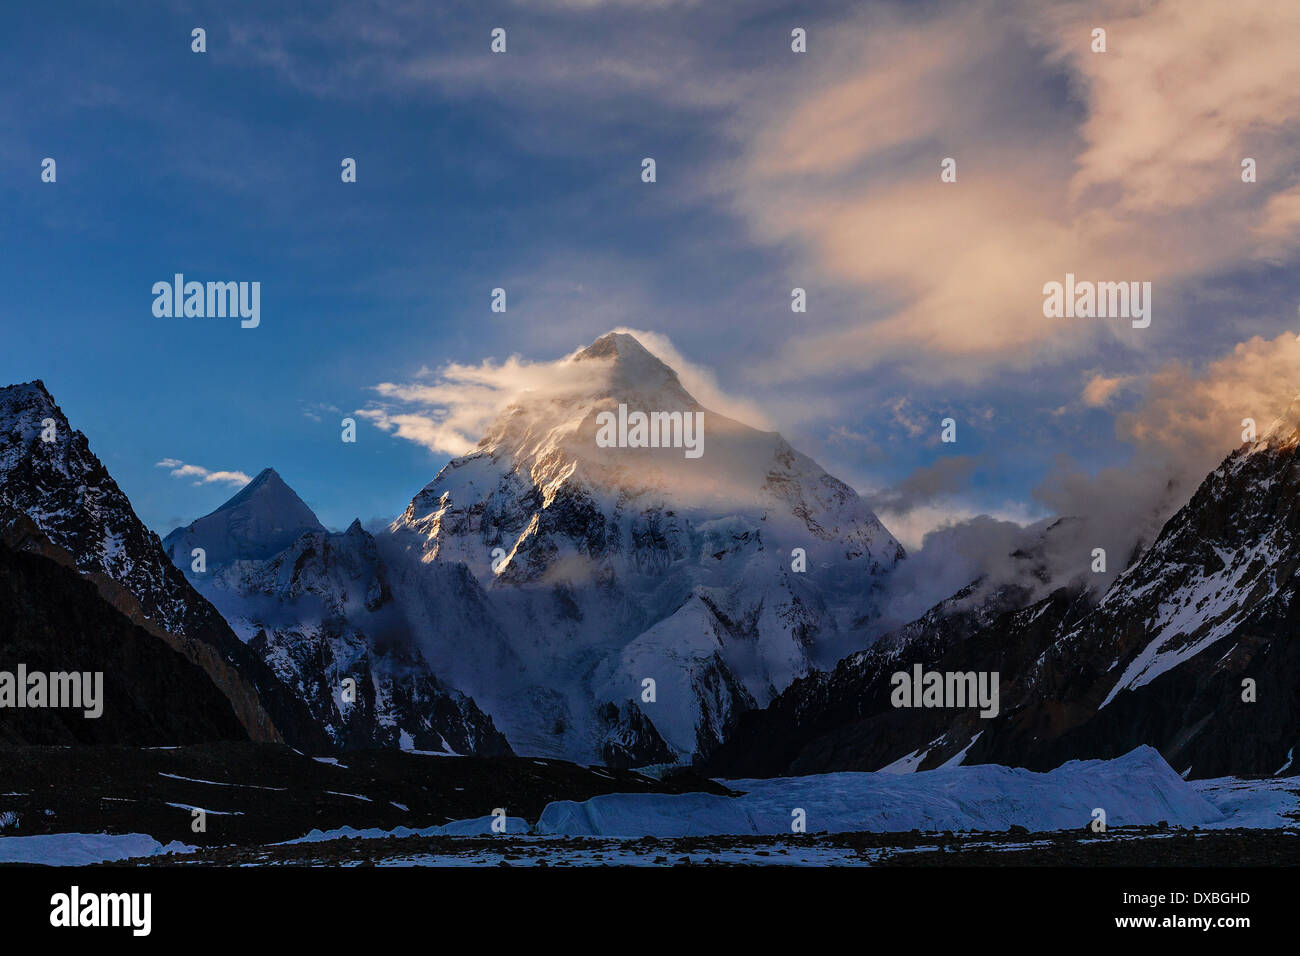 K2 mountain range immagini e fotografie stock ad alta risoluzione - Alamy